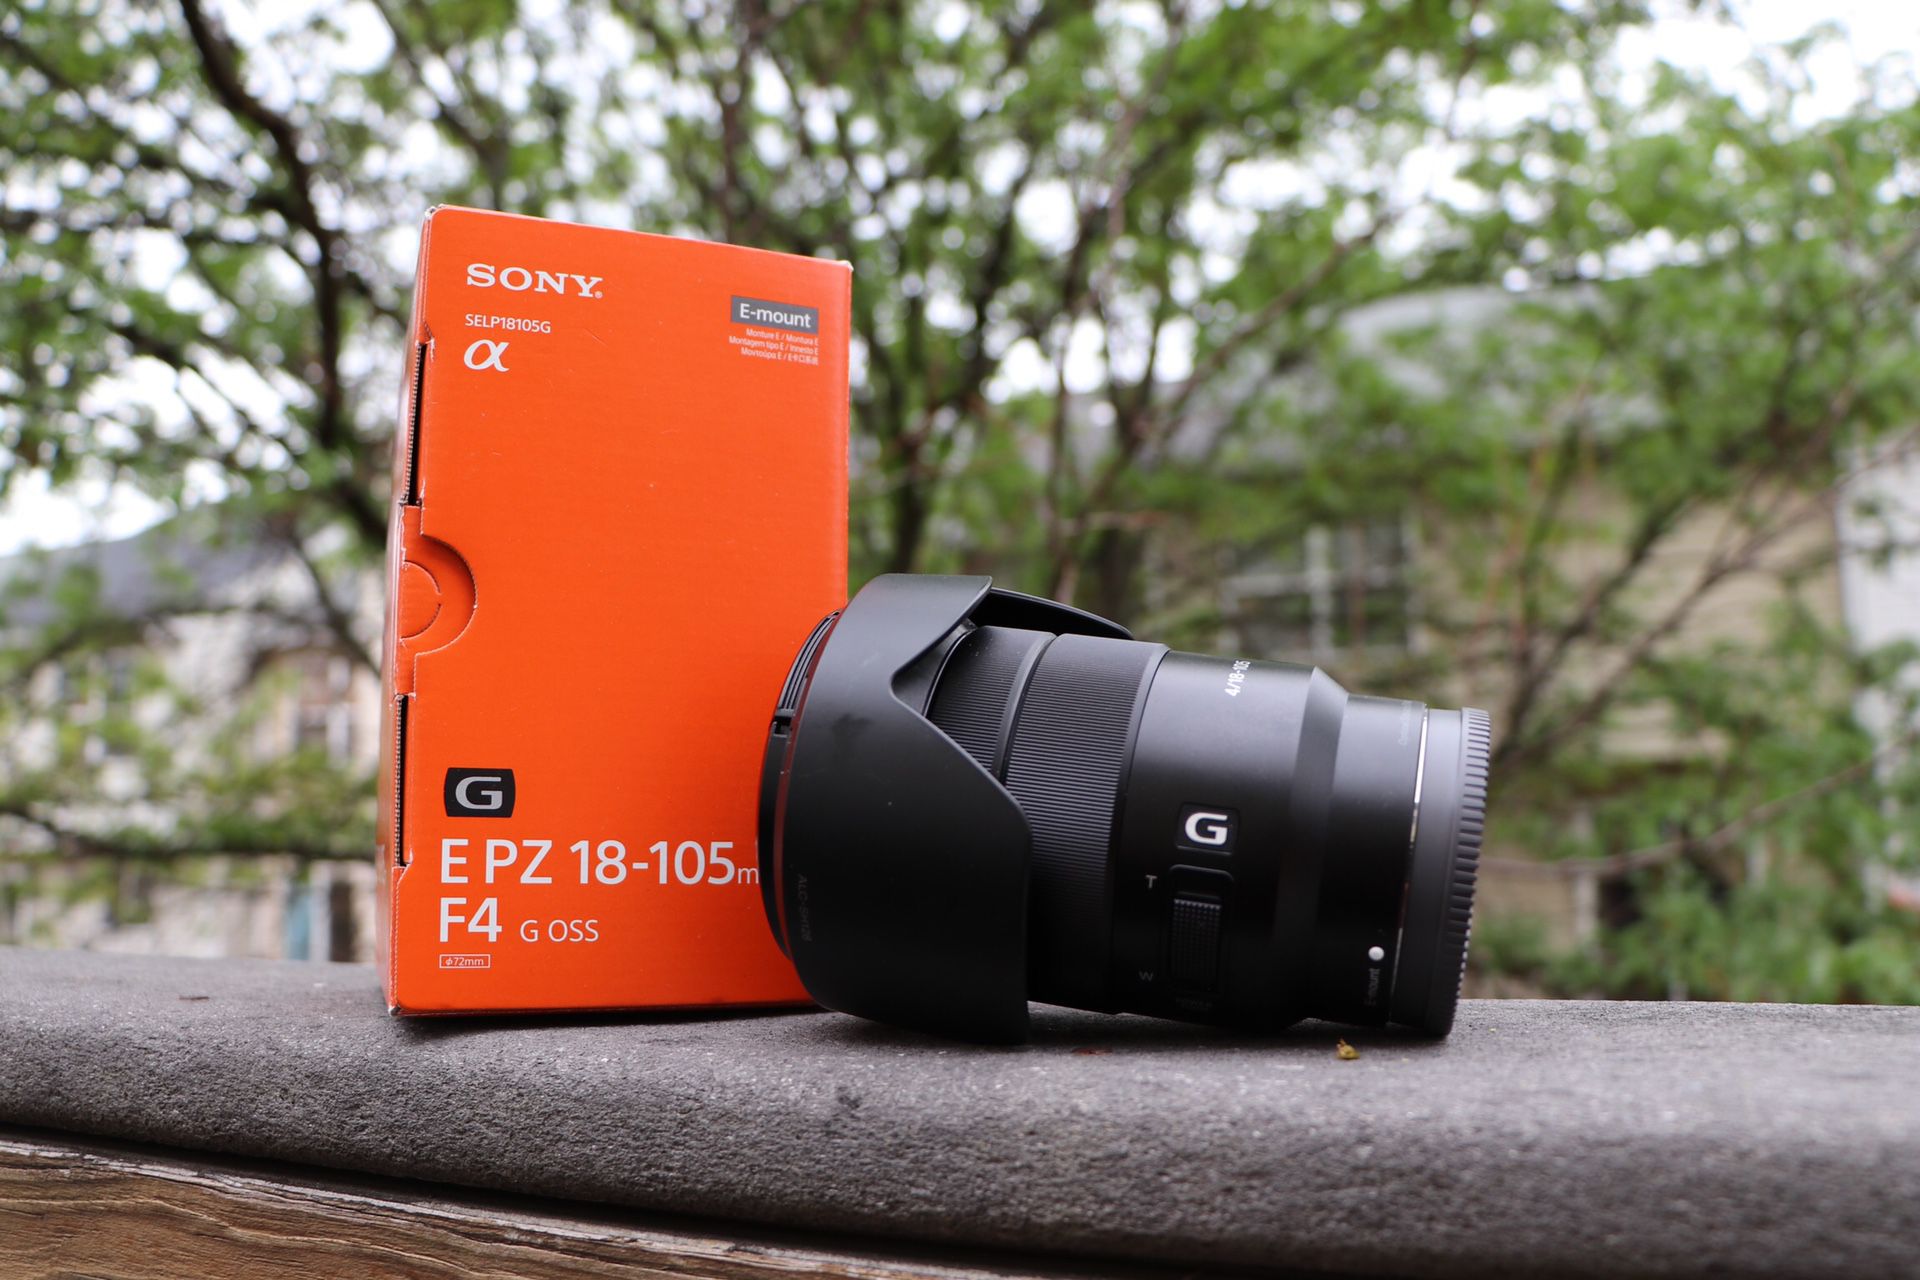 Sony - E PZ 18-105mm f/4.0 G OSS Power Zoom Lens